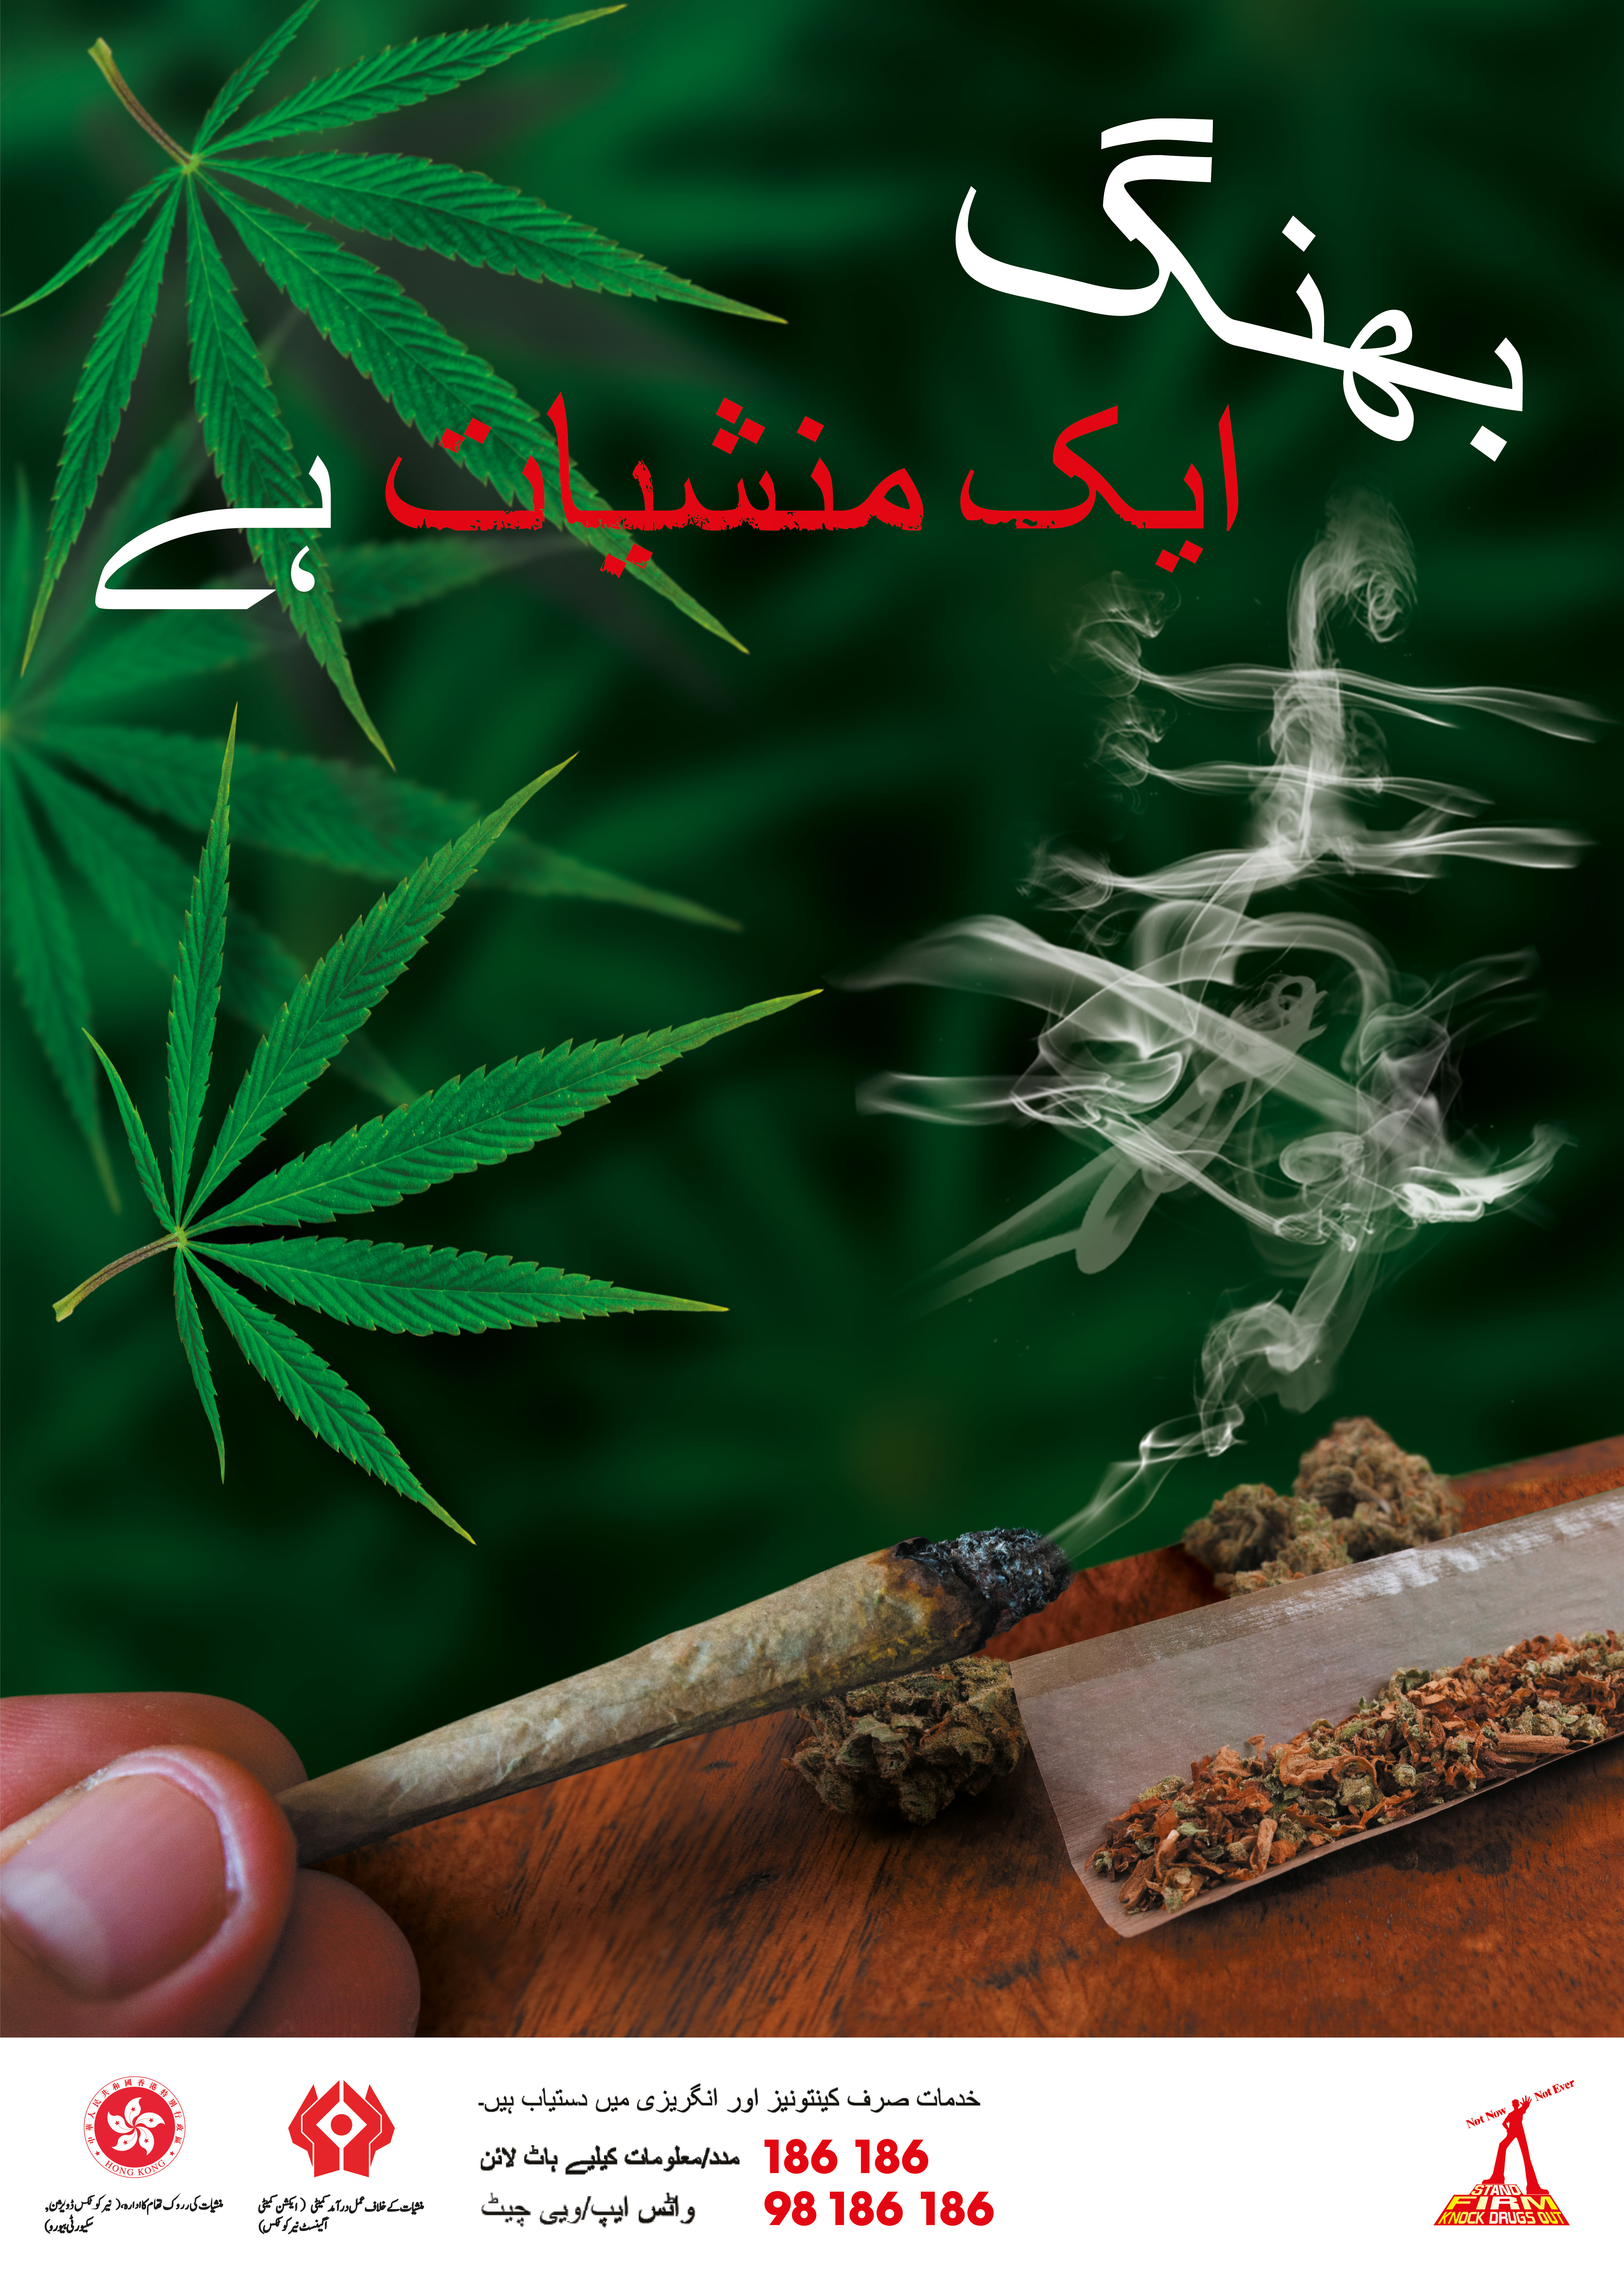 禁毒海報「 大麻係毒品 」－ 巴基斯坦文版本